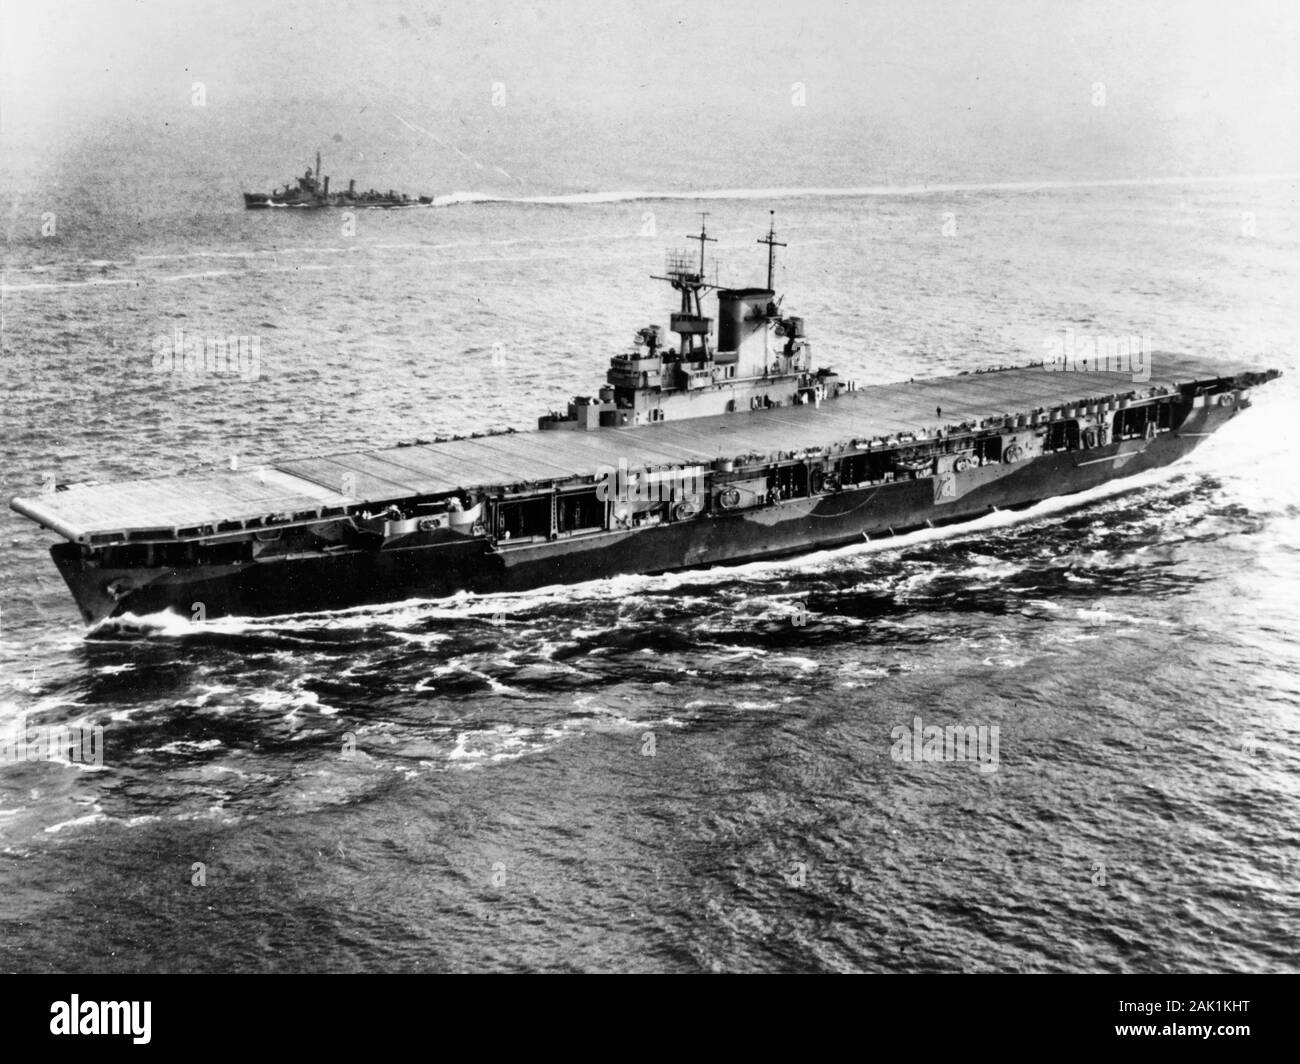 Die US-Marine Flugzeugträger USS Wasp (CV-7) in Hampton Roads, Virginia (USA), am 26. Mai 1942. Die Begleitung Zerstörer USS Edison (DD-439) ist im Hintergrund sichtbar. Stockfoto